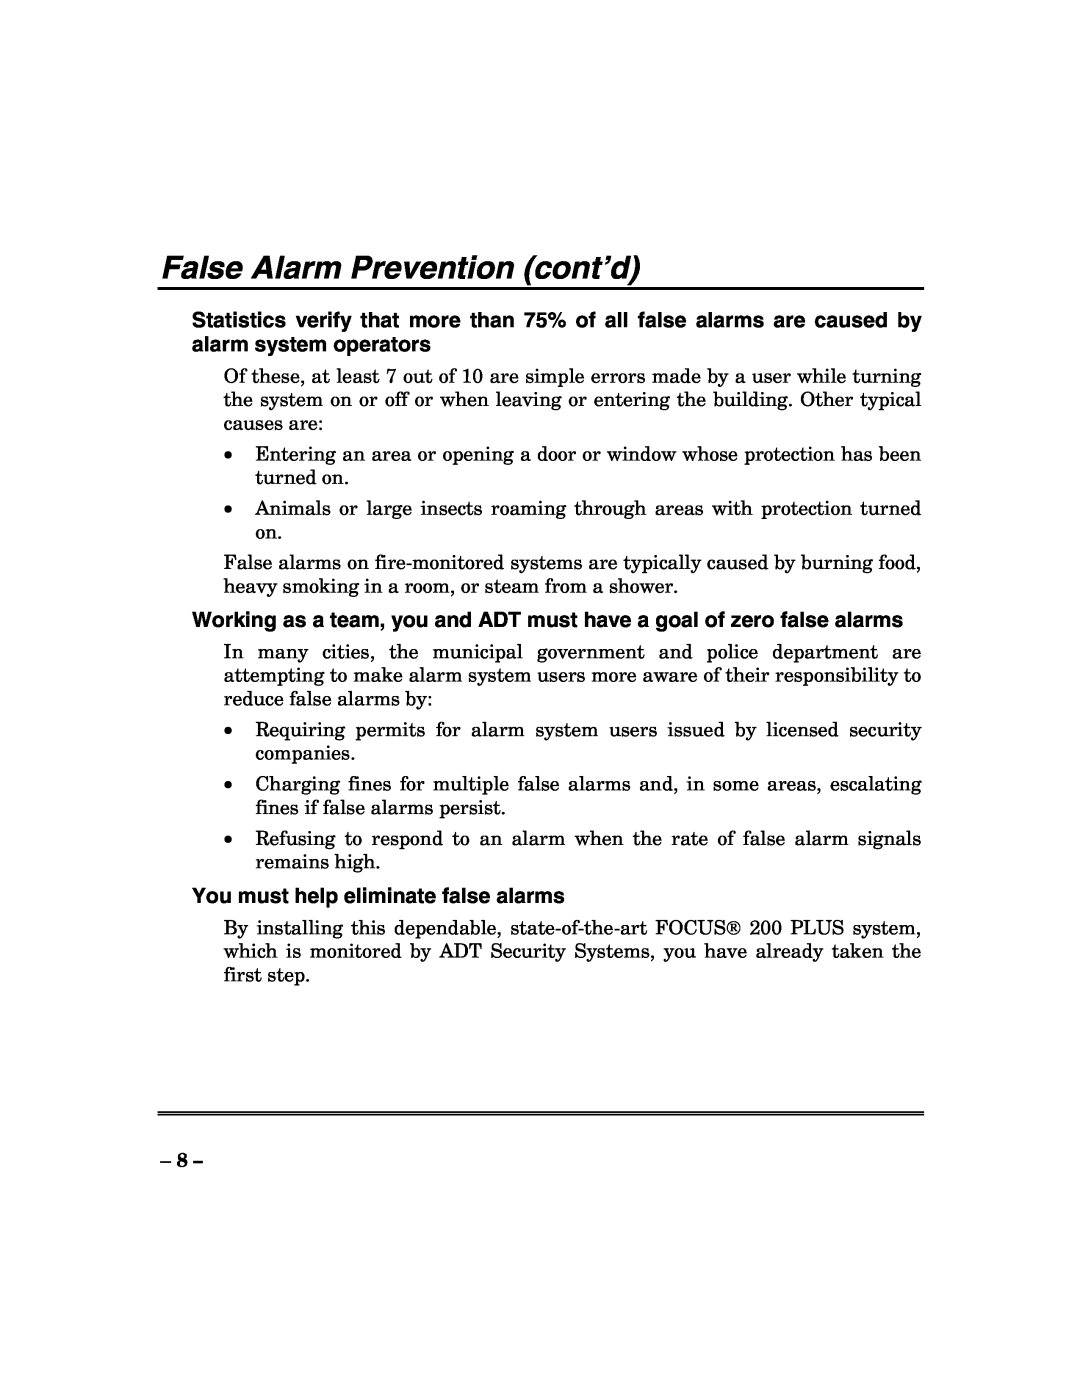 ADT Security Services 200 Plus manual False Alarm Prevention cont’d, You must help eliminate false alarms 